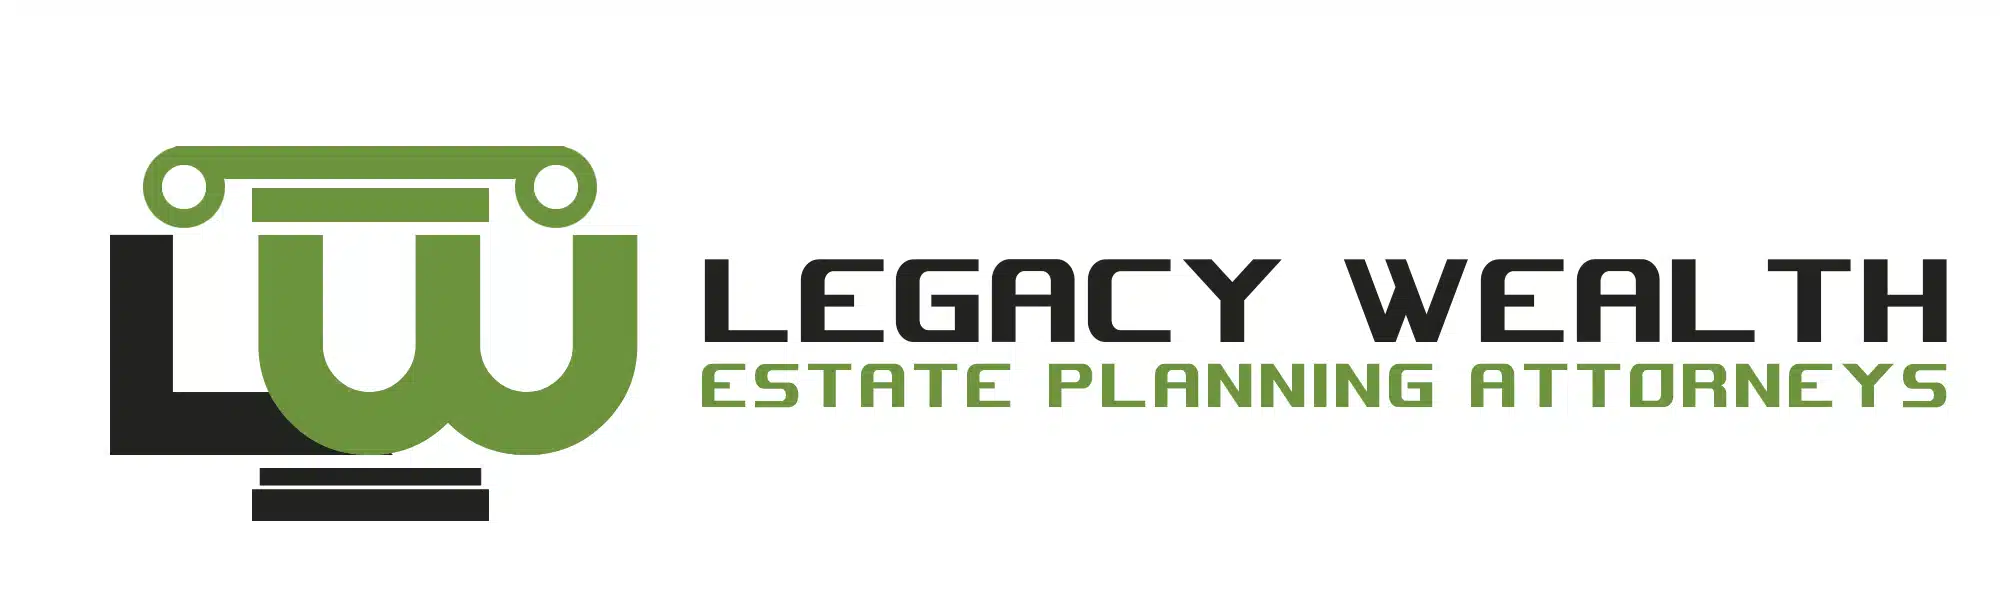 Legacy-Wealth-3.webp